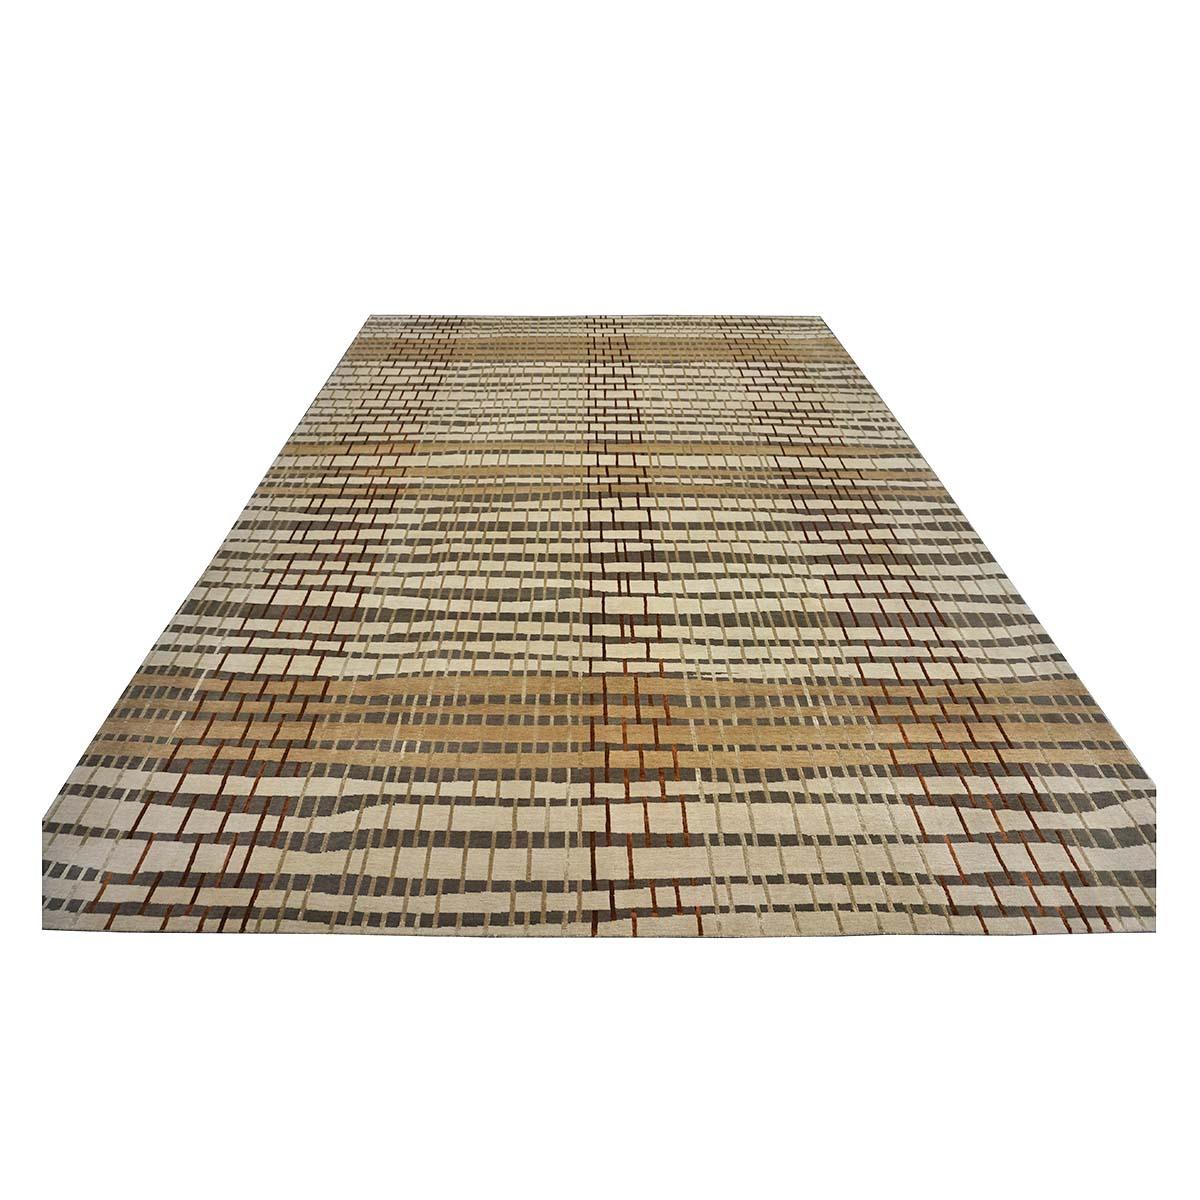  Ashly Fine Rugs présente un nouveau tapis d'inspiration moderne en laine et soie 10x14 Tan, Ivory, & Rust, fait main, avec des fibres lustrées et brillantes et un poil épais et durable. Cette magnifique collection a été conçue par notre designer